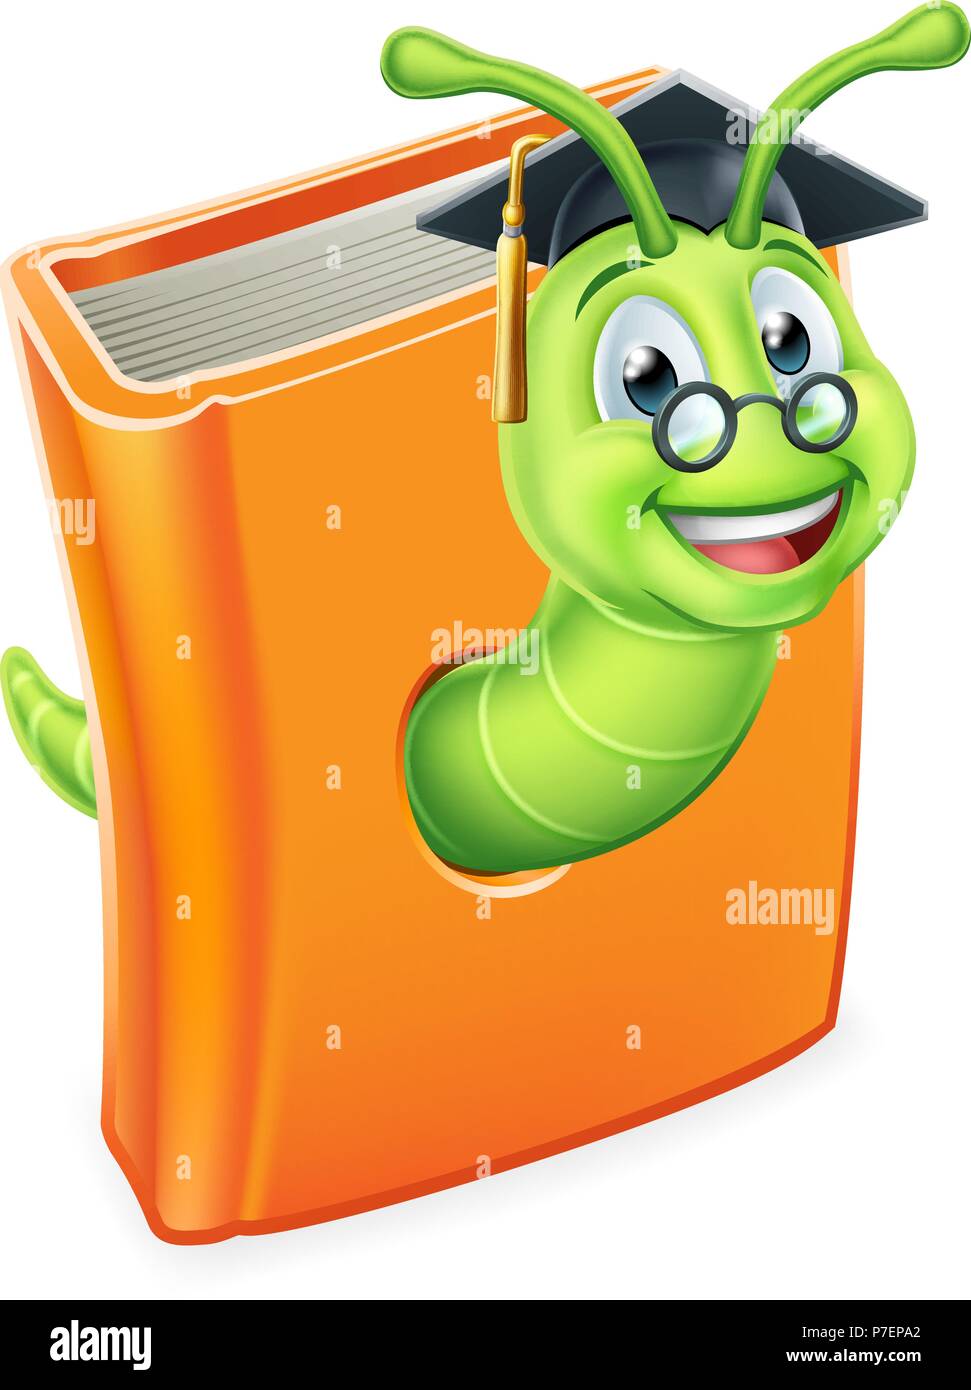 Graduate Worm Bookworm Caterpillar in Book Stock Vector